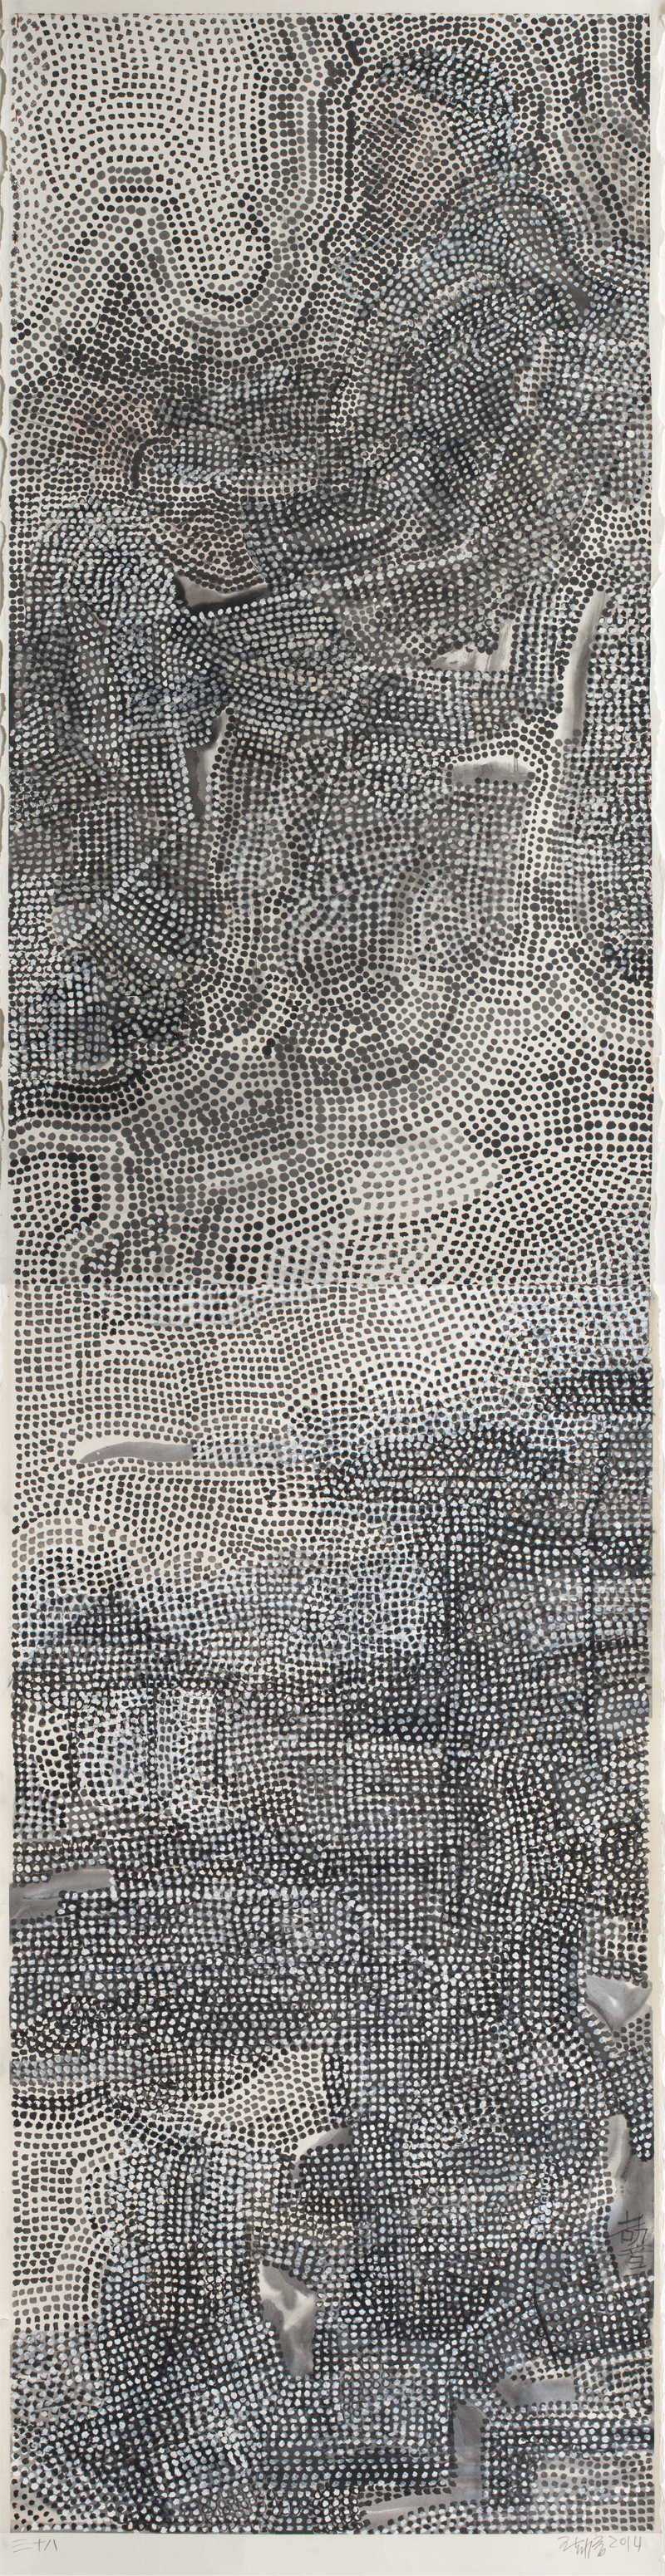 王劼音WANG Jieyin 《山水笔记-三十八》Landscape Notes－38  272×69  纸本水墨Ink on Paper  2014